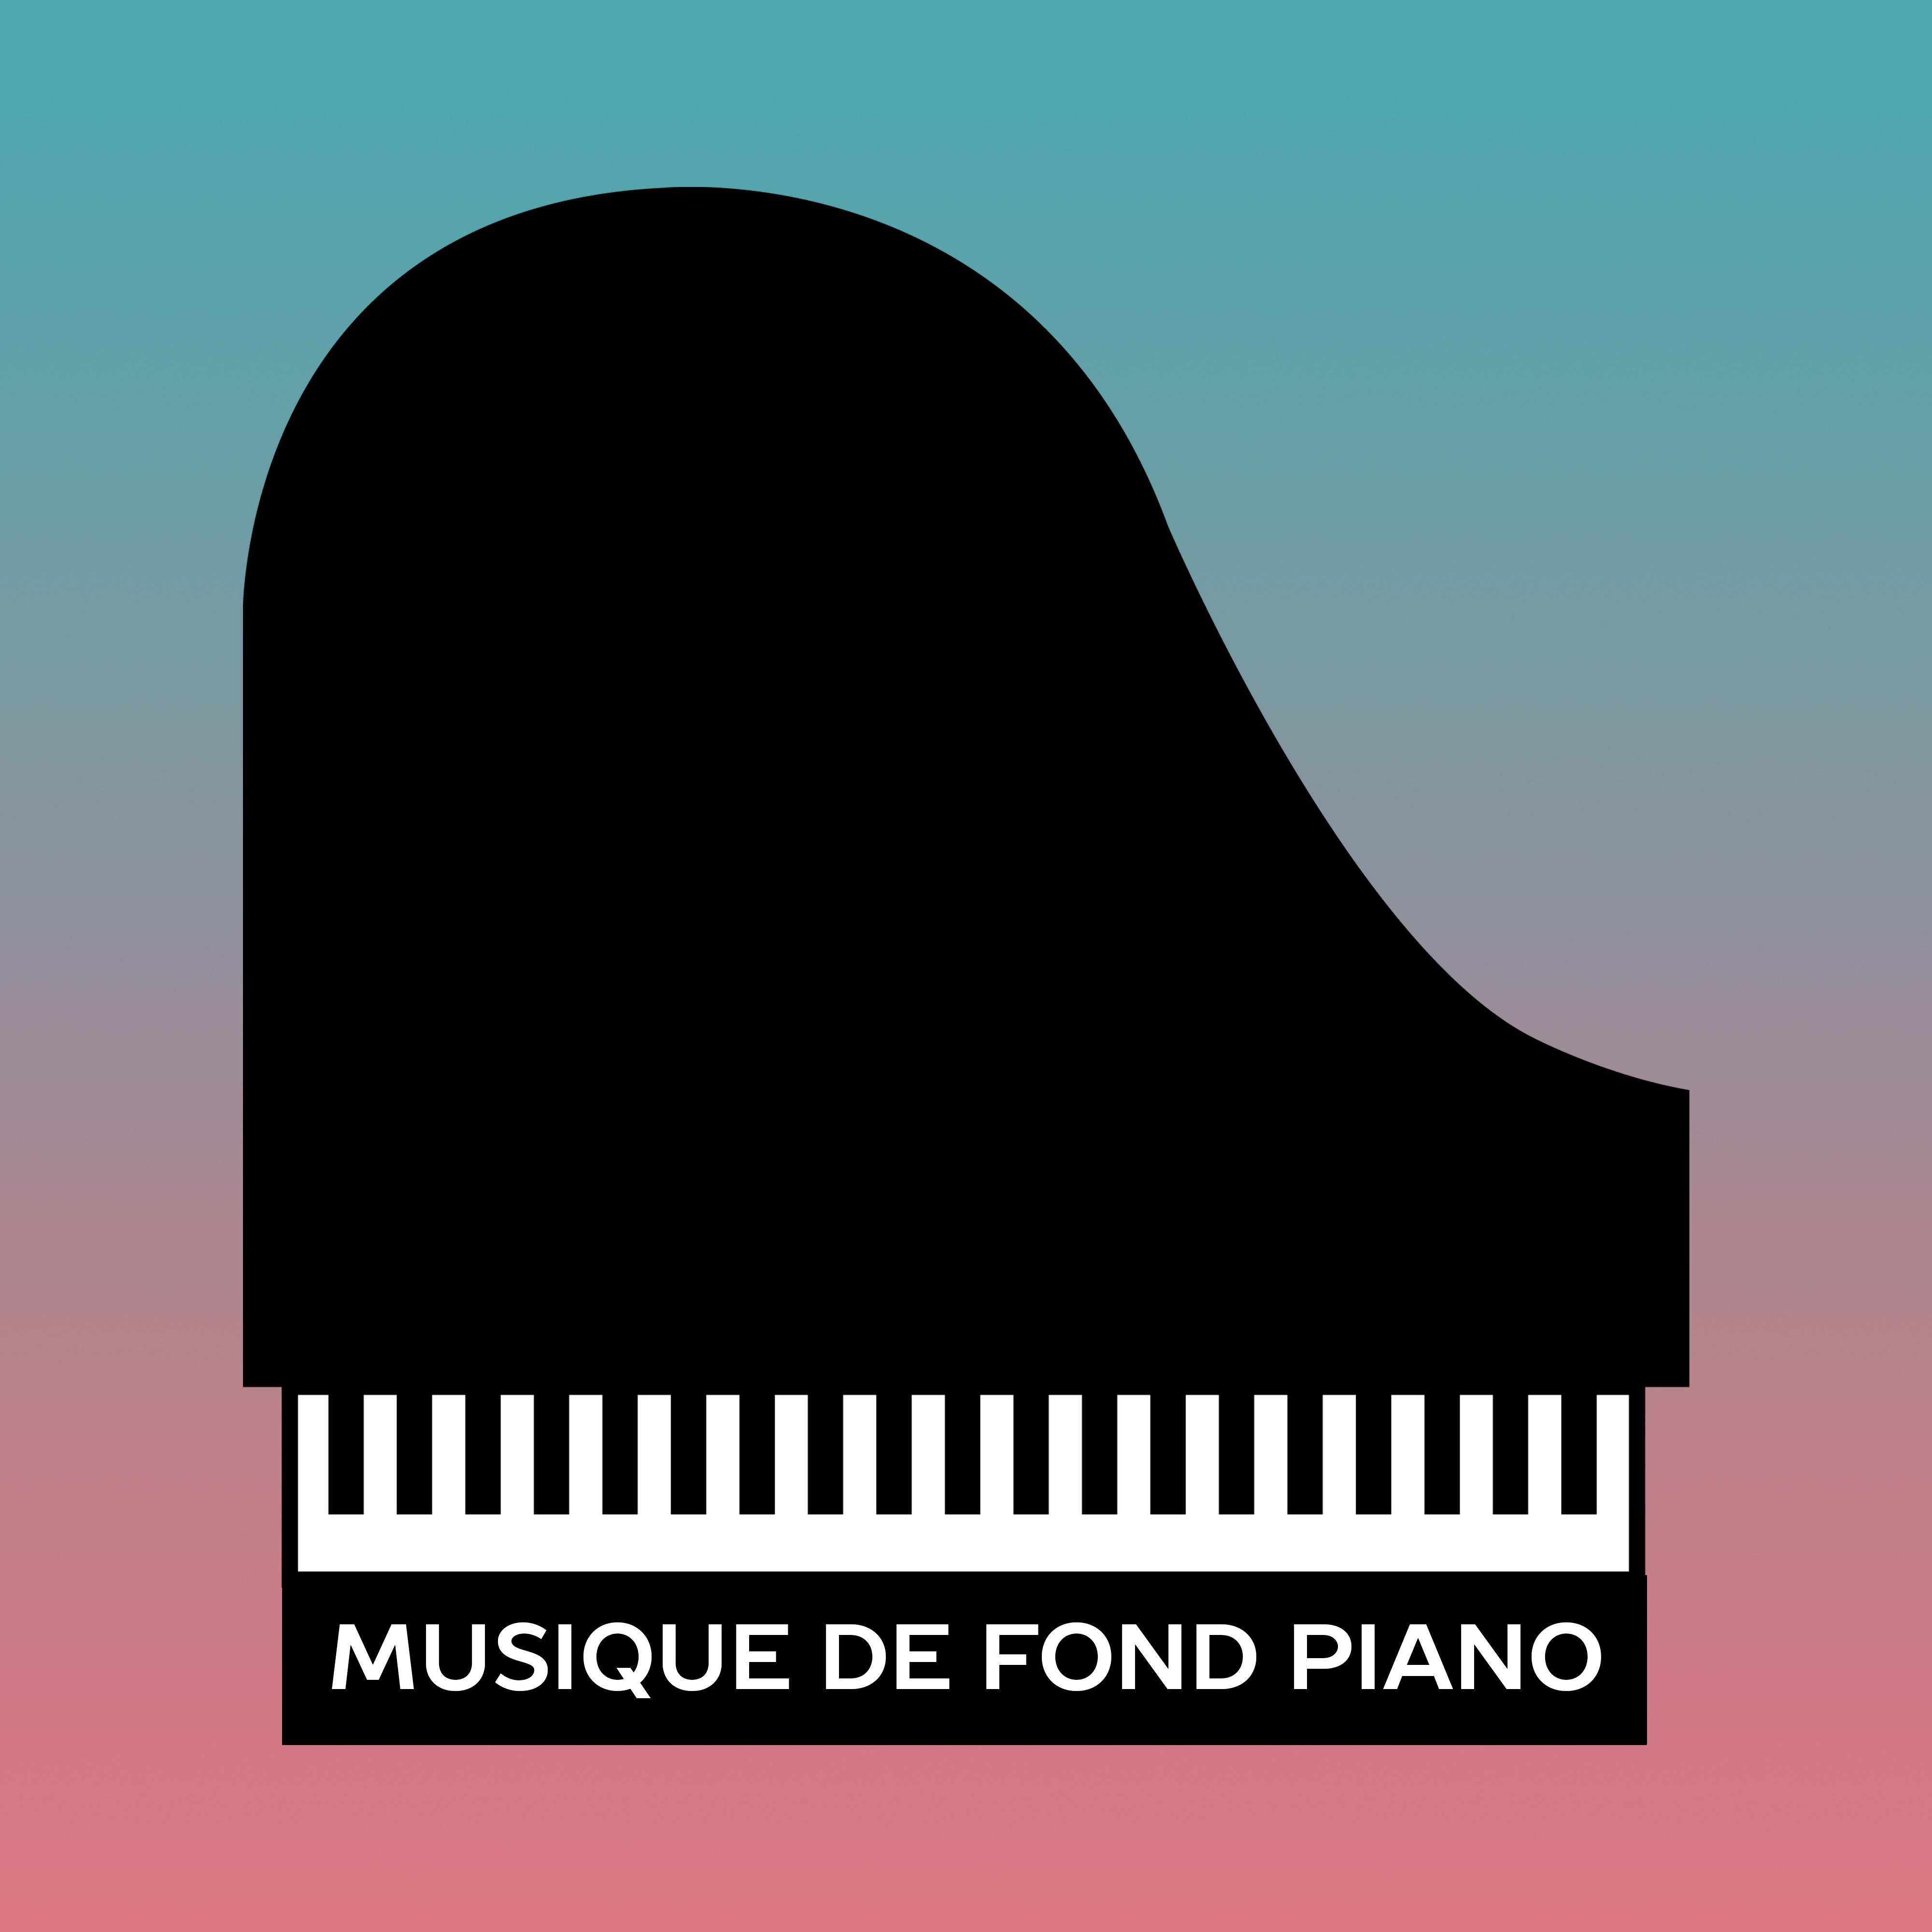 Musique de fond piano Bar cafe musique, instrumental jazz, paris cafe